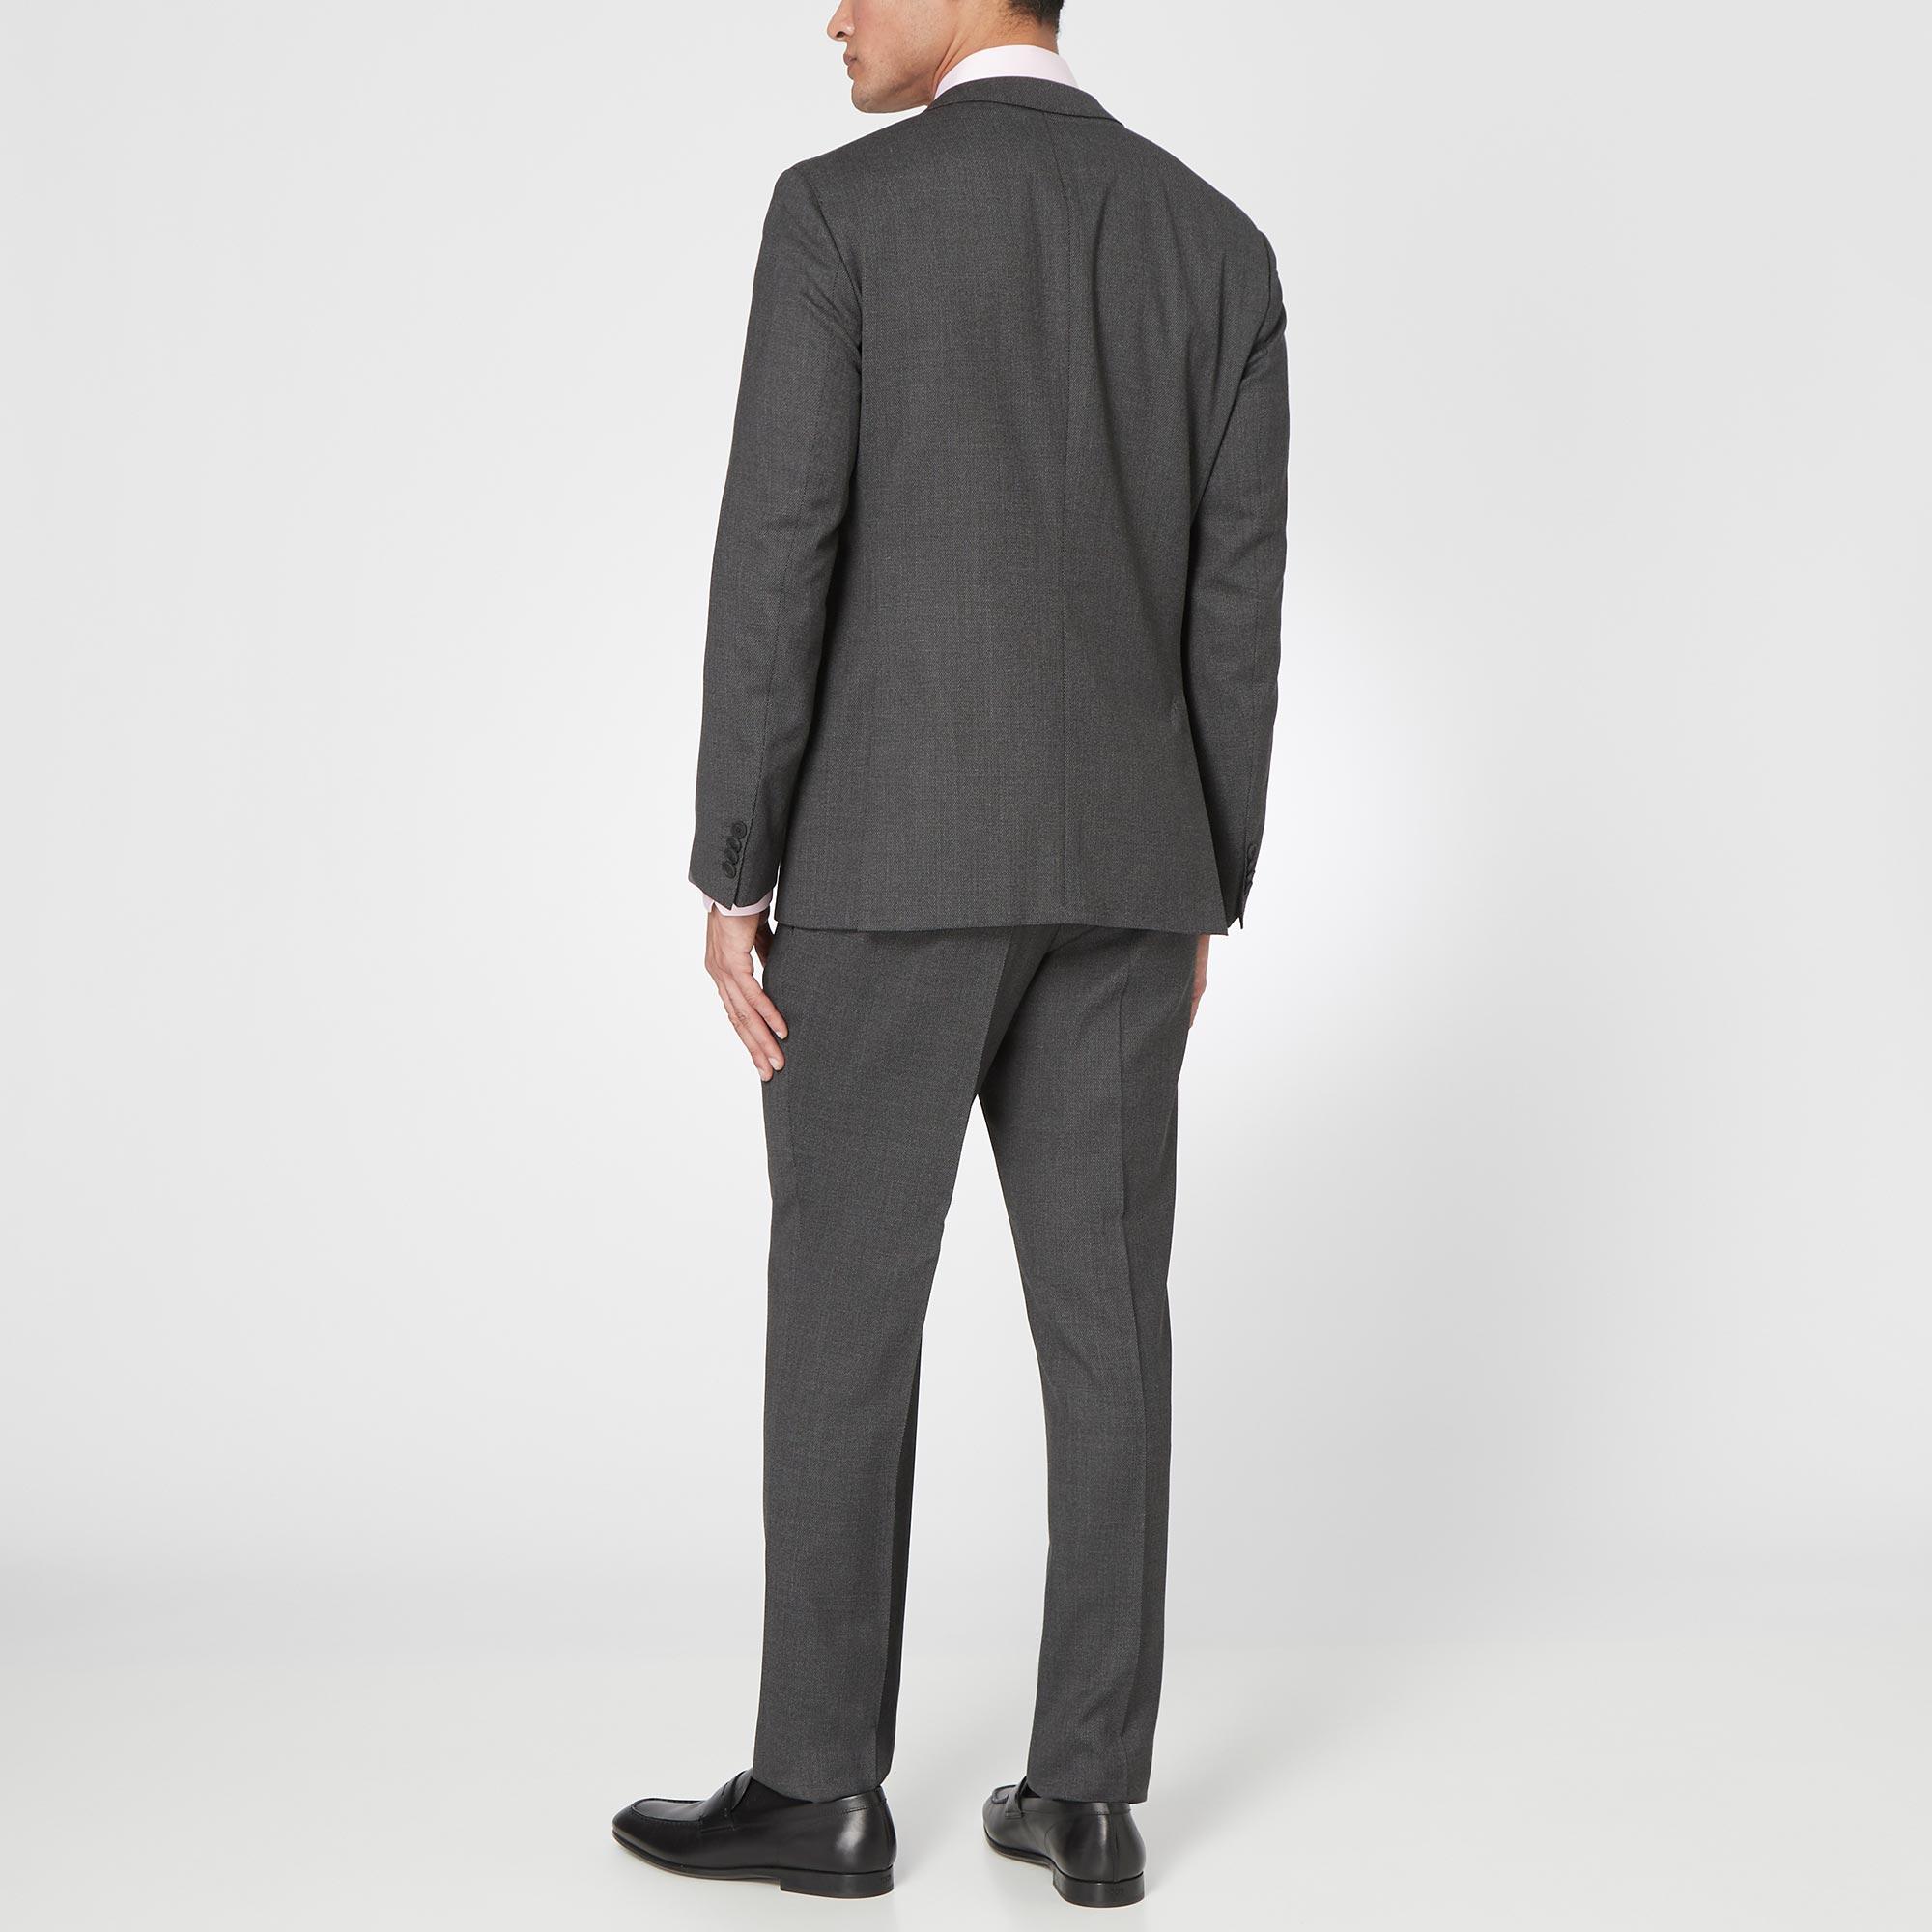 Herrel/Grace Textured Travel Suit